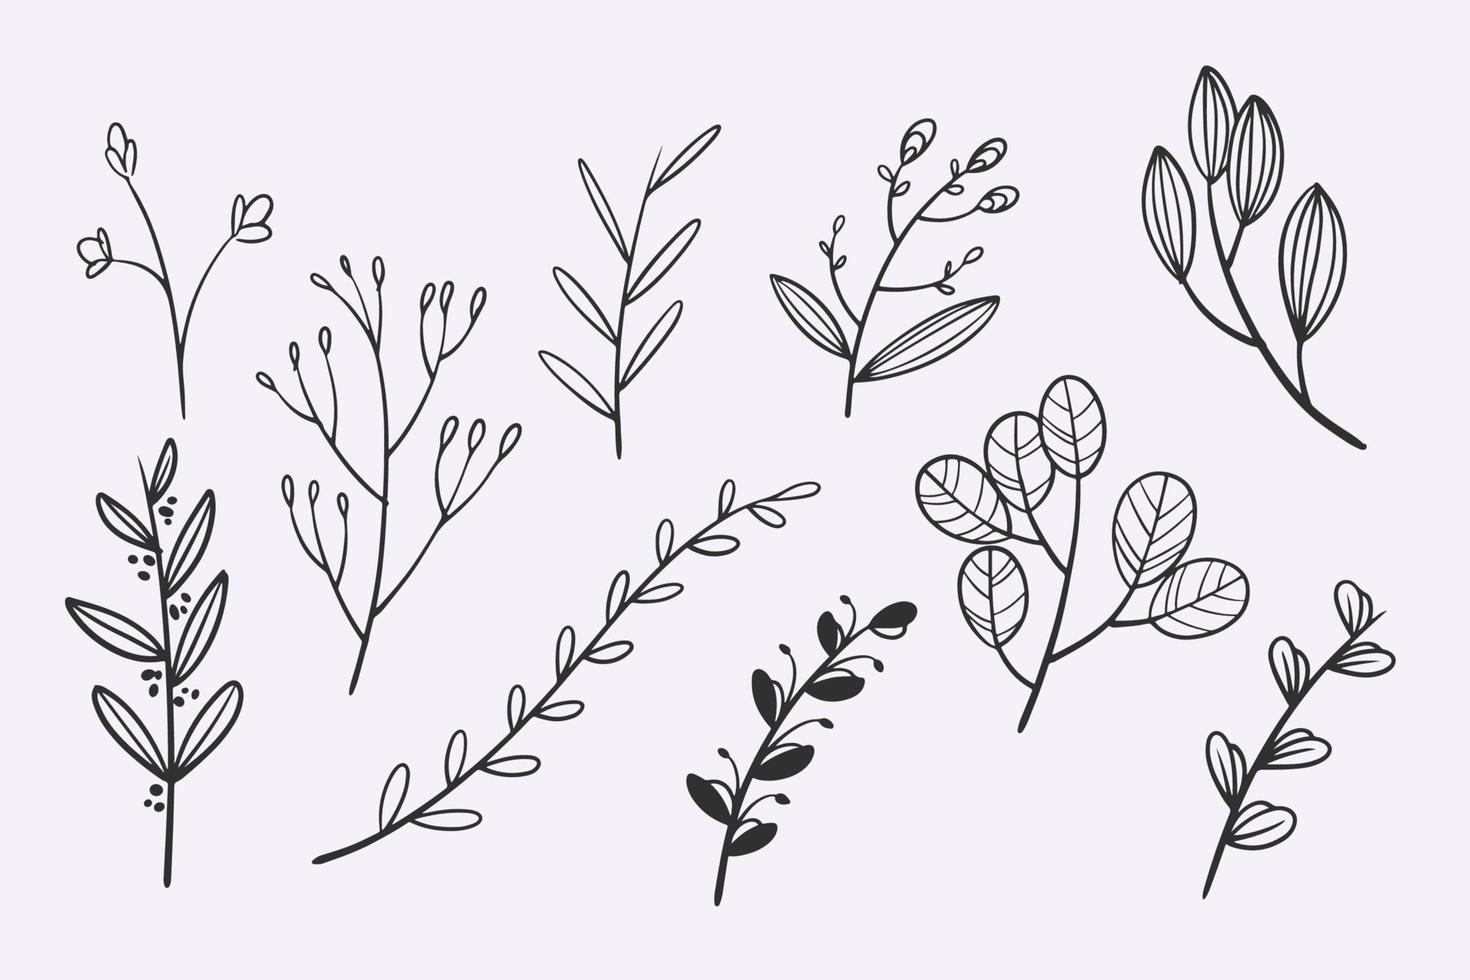 bloem bladeren doodle hand getrokken vector illustratie set